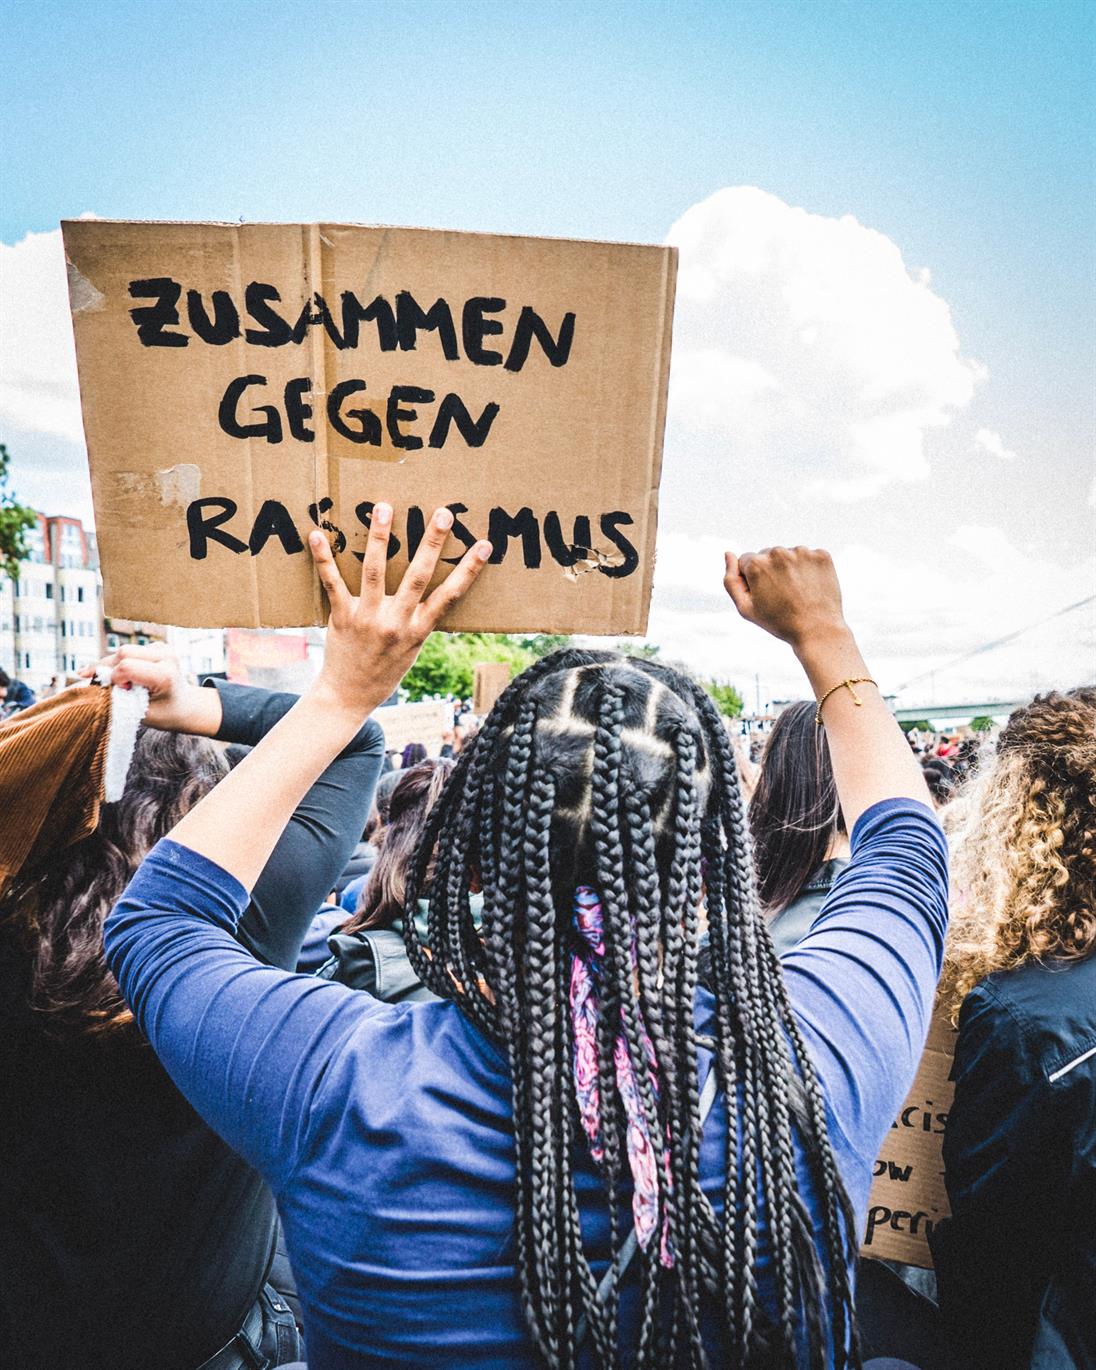 Ein Bild von einer Frau, welche man von hinten sieht und die ein Schild hochhält mit der Aufschrift "Zusammen gegen Rassismus"